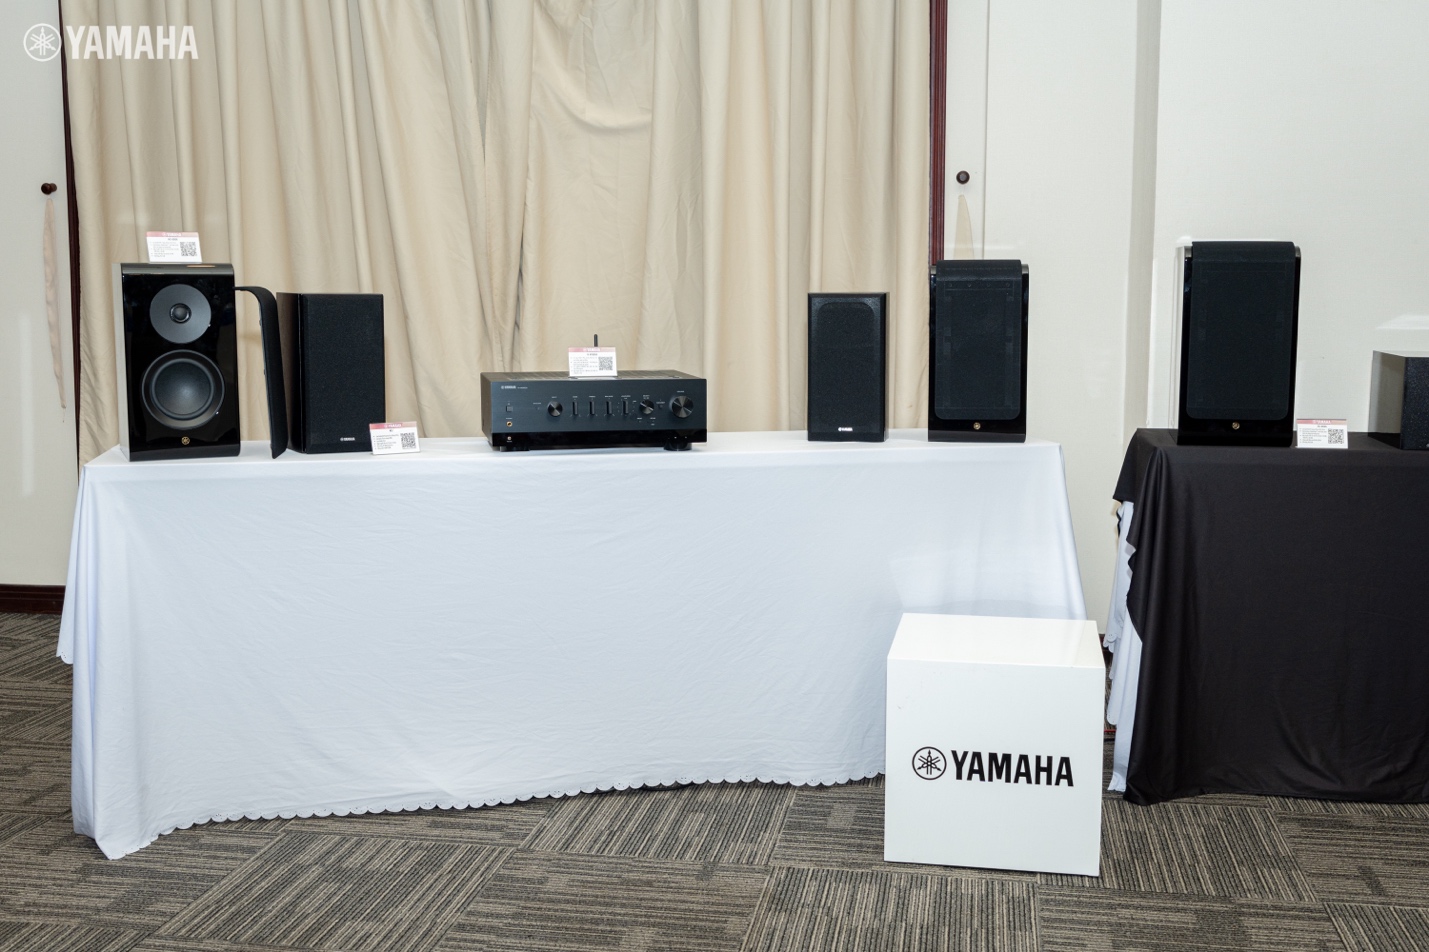 Hệ thống âm thanh Hi-Fi Yamaha với network receiver và loa bookshelf